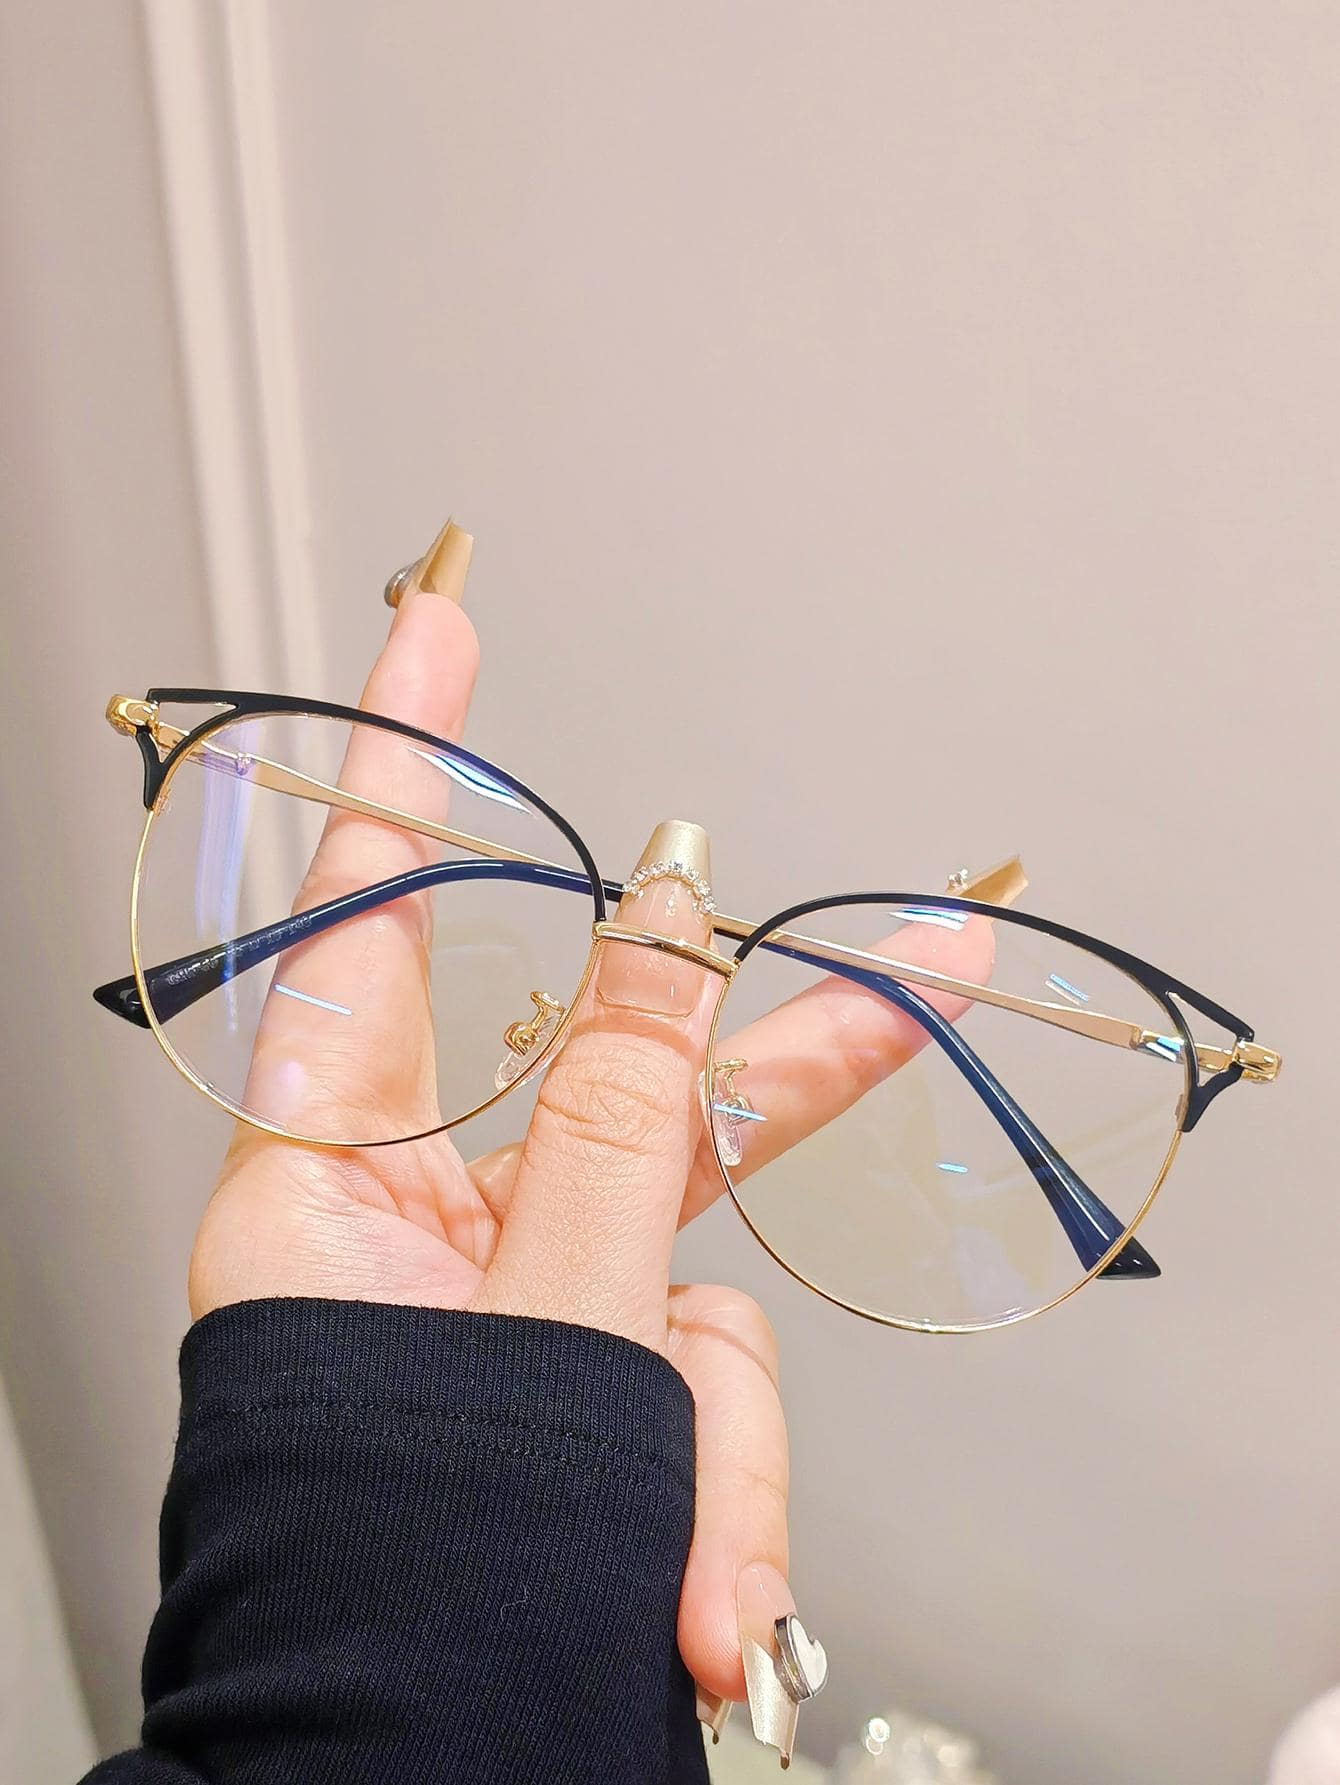 1 шт. женские легкие металлические очки в круглой оправе с блокировкой синего света и разноцветным дизайном с полыми бровями (доступен по рецепту) очки маска с бровями и усами